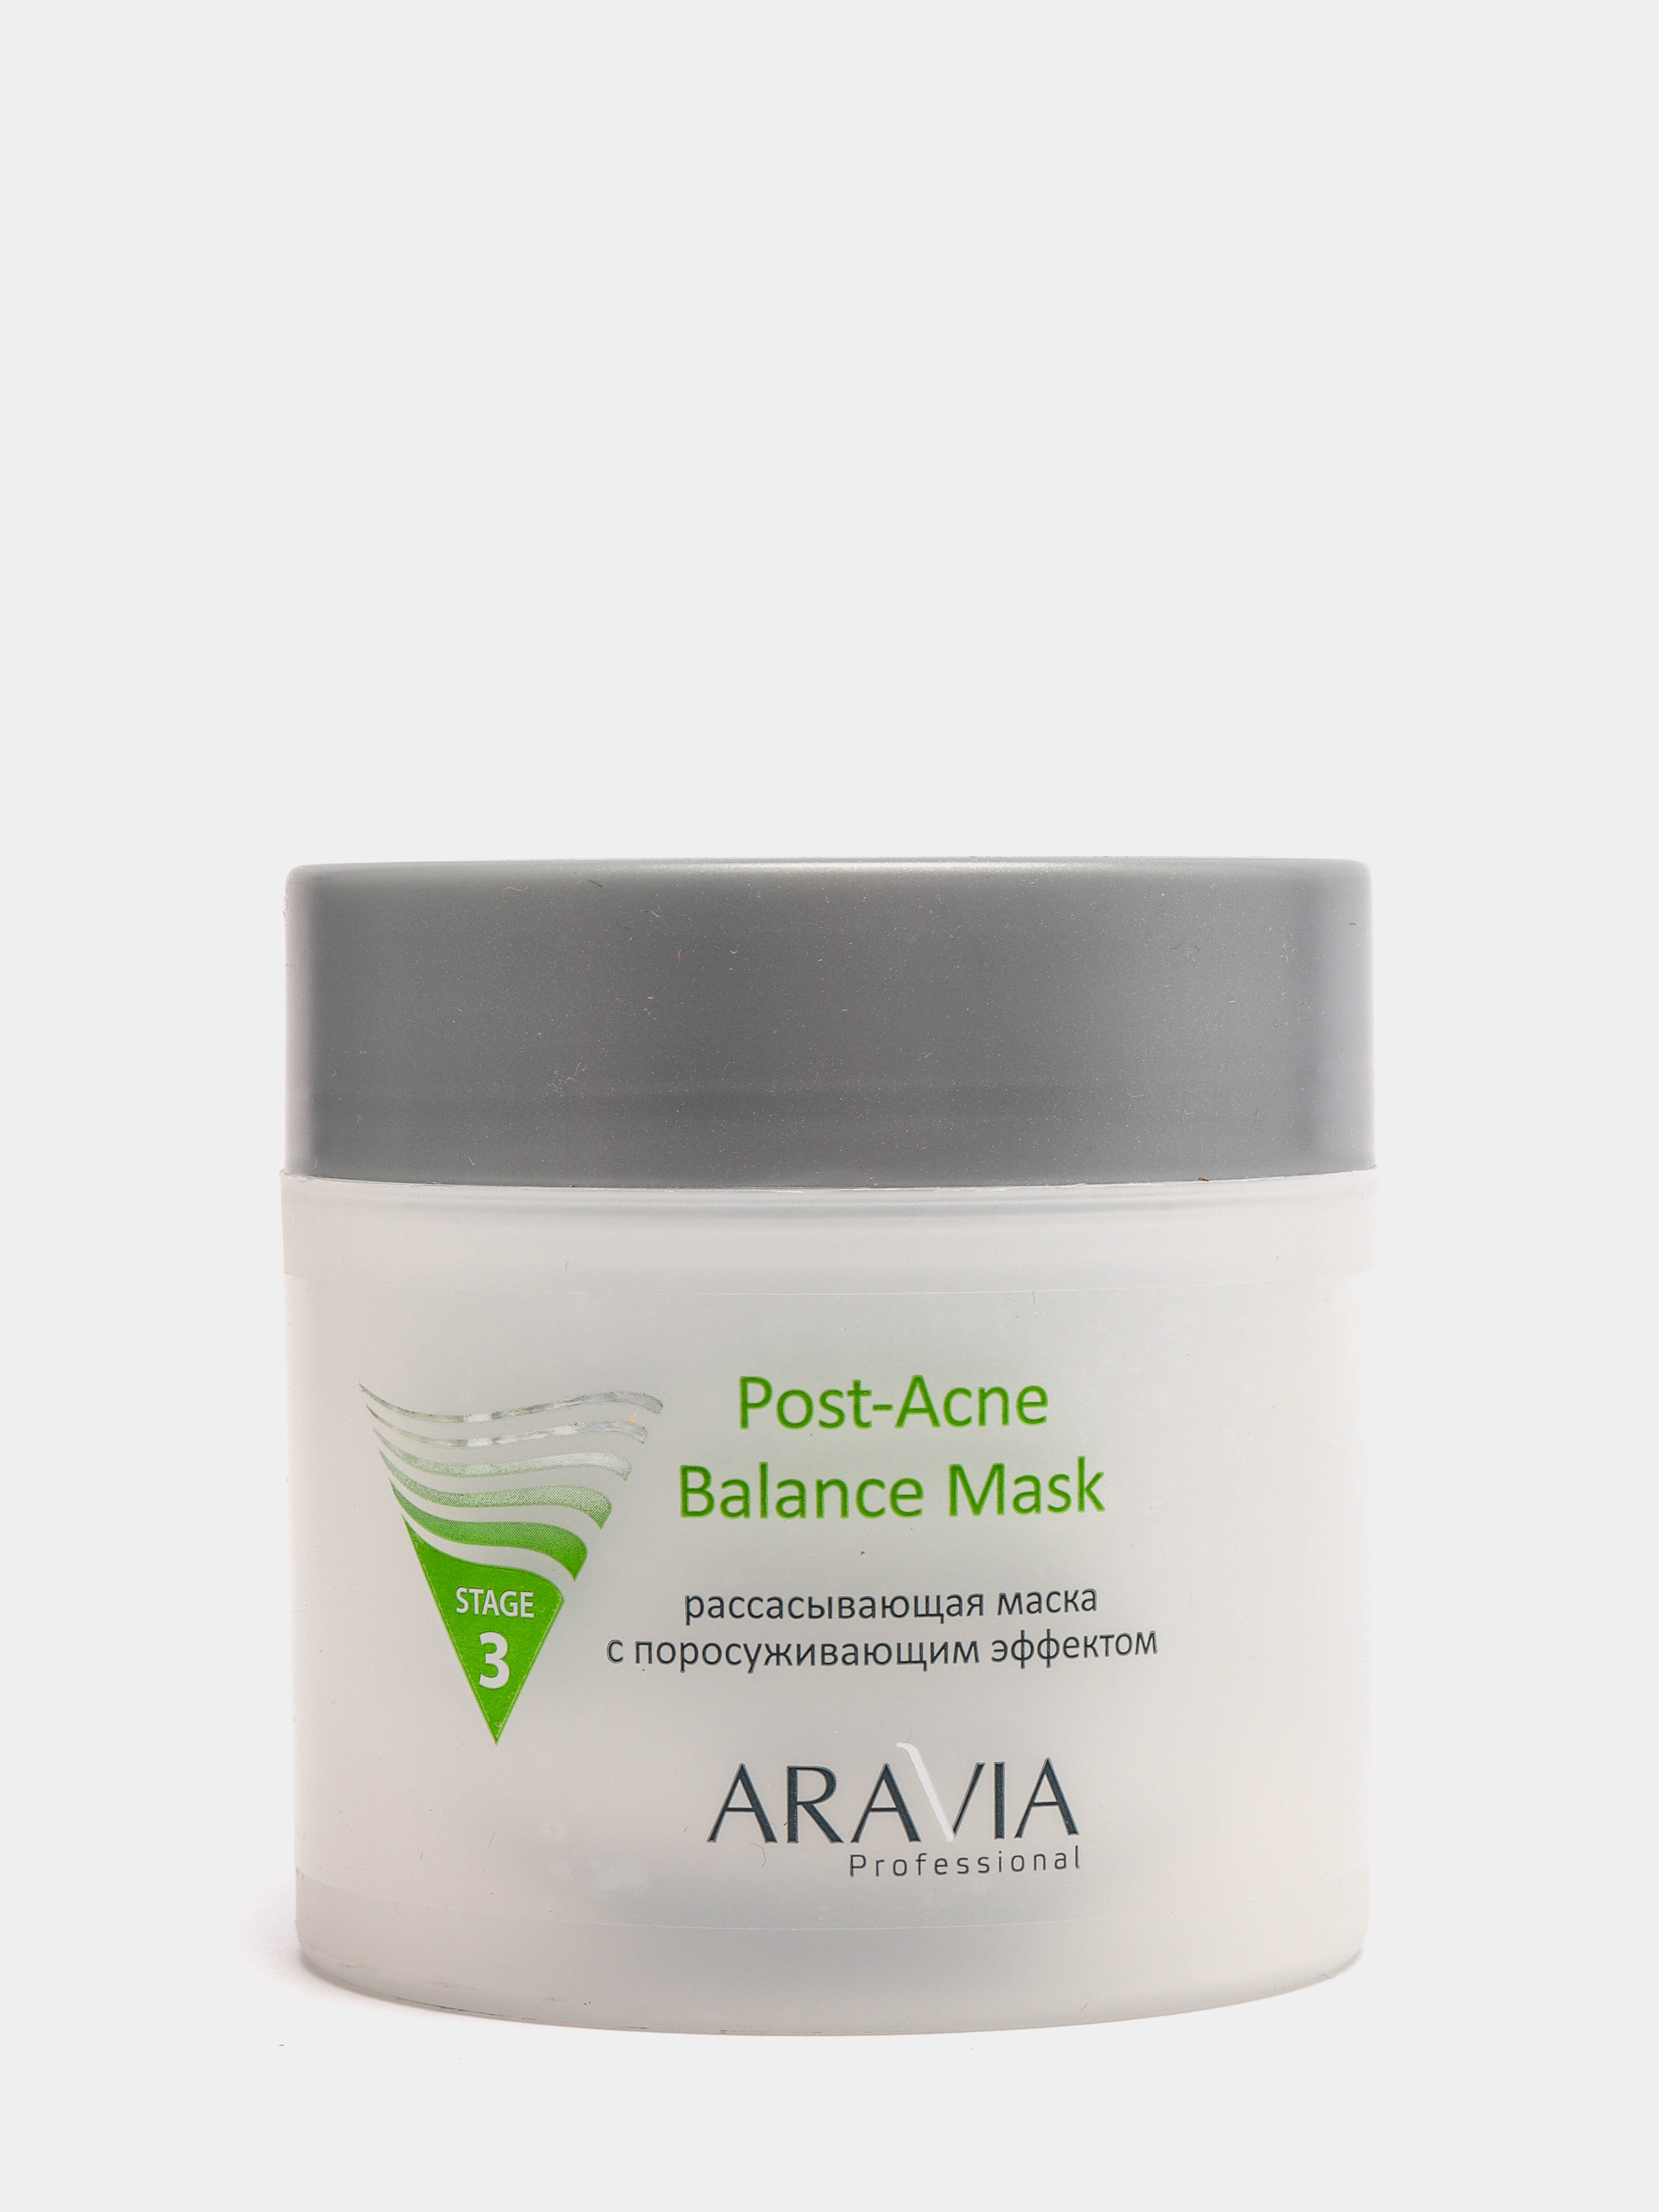 Аравия рассасывающая маска отзывы. Aravia Post acne Balance Mask. Аравия рассасывающая маска с поросуживающим эффектом. Post acne маска. Маска для лица с ментолом Аравия.